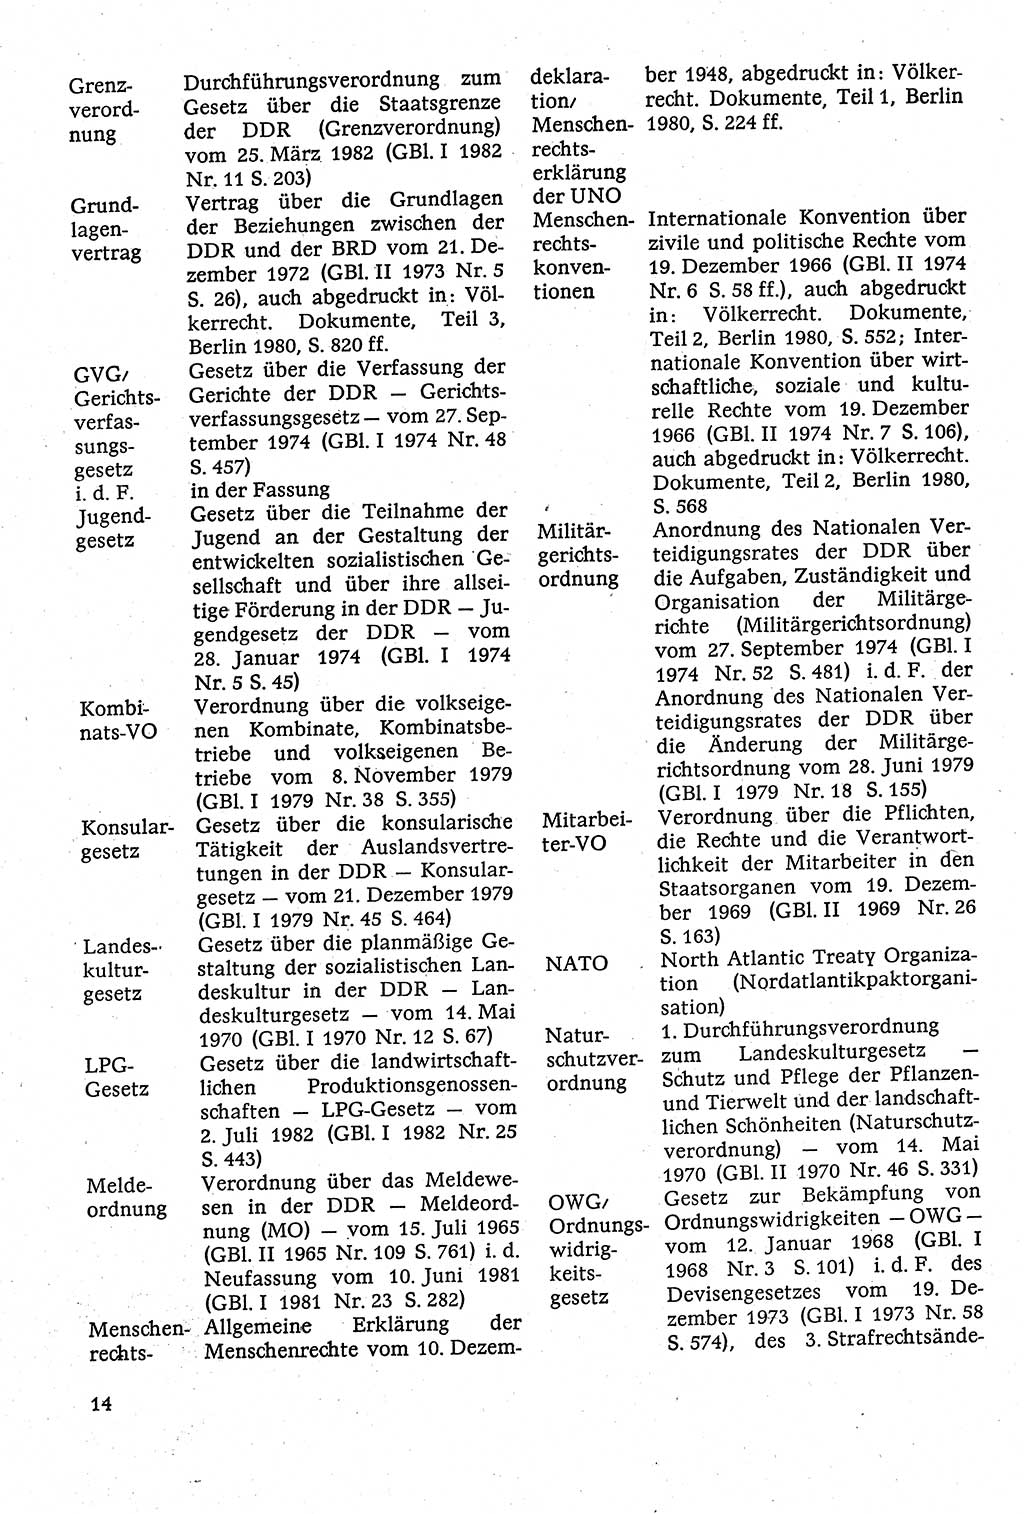 Staatsrecht der DDR [Deutsche Demokratische Republik (DDR)], Lehrbuch 1984, Seite 14 (St.-R. DDR Lb. 1984, S. 14)